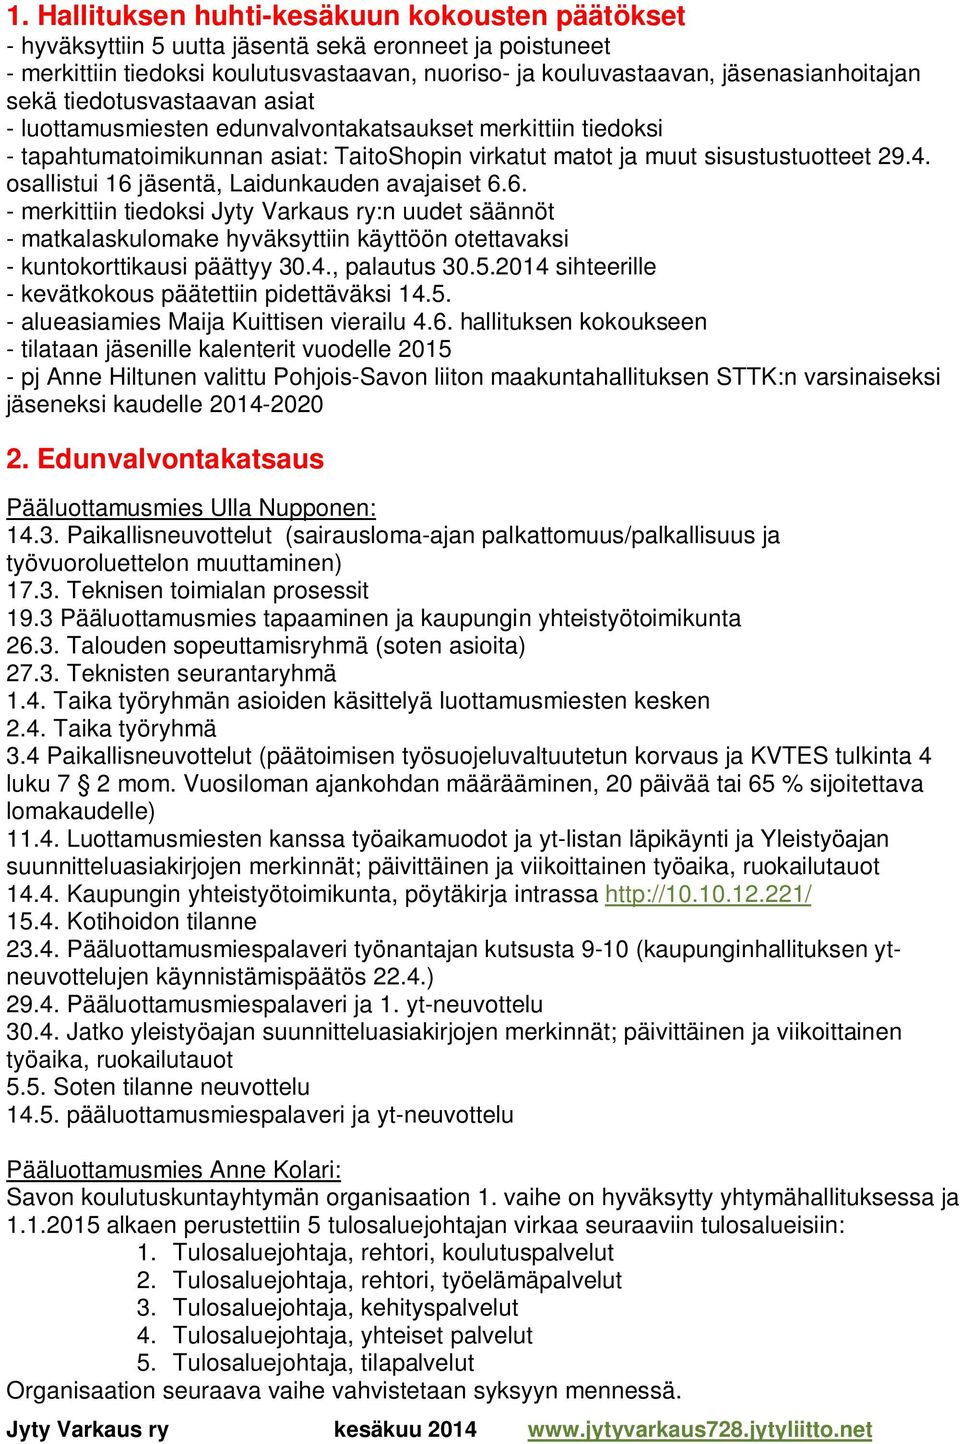 osallistui 16 jäsentä, Laidunkauden avajaiset 6.6. - merkittiin tiedoksi Jyty Varkaus ry:n uudet säännöt - matkalaskulomake hyväksyttiin käyttöön otettavaksi - kuntokorttikausi päättyy 30.4.